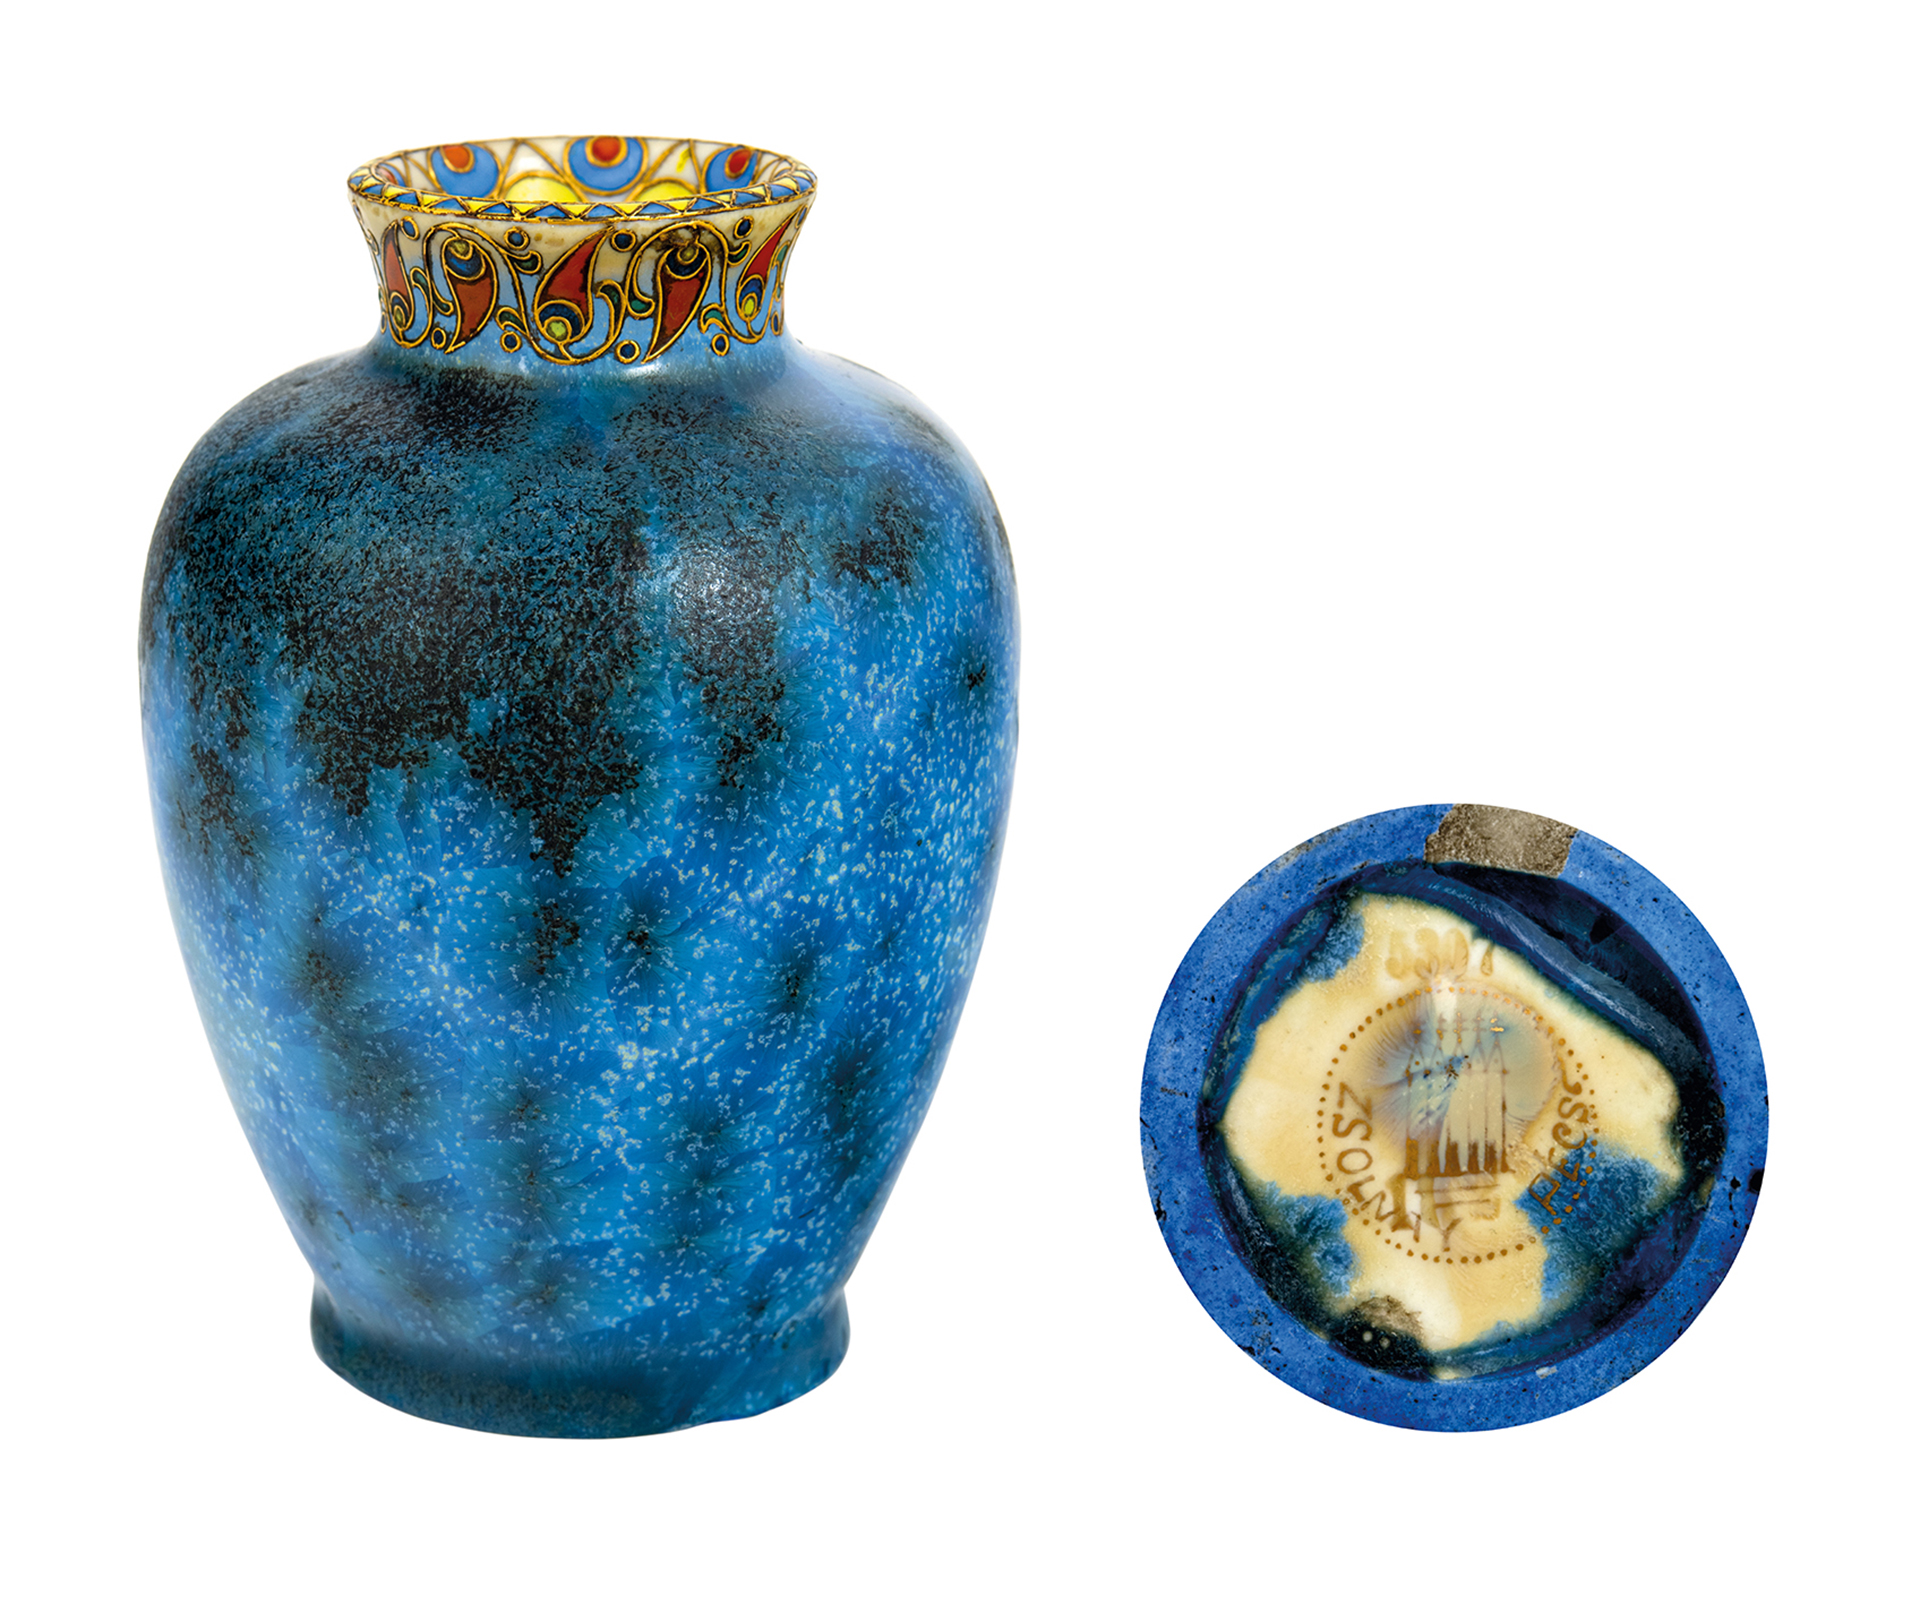 Zsolnay Crystal-glazed Vase with geometric border decoration, Zsolnay, 1909